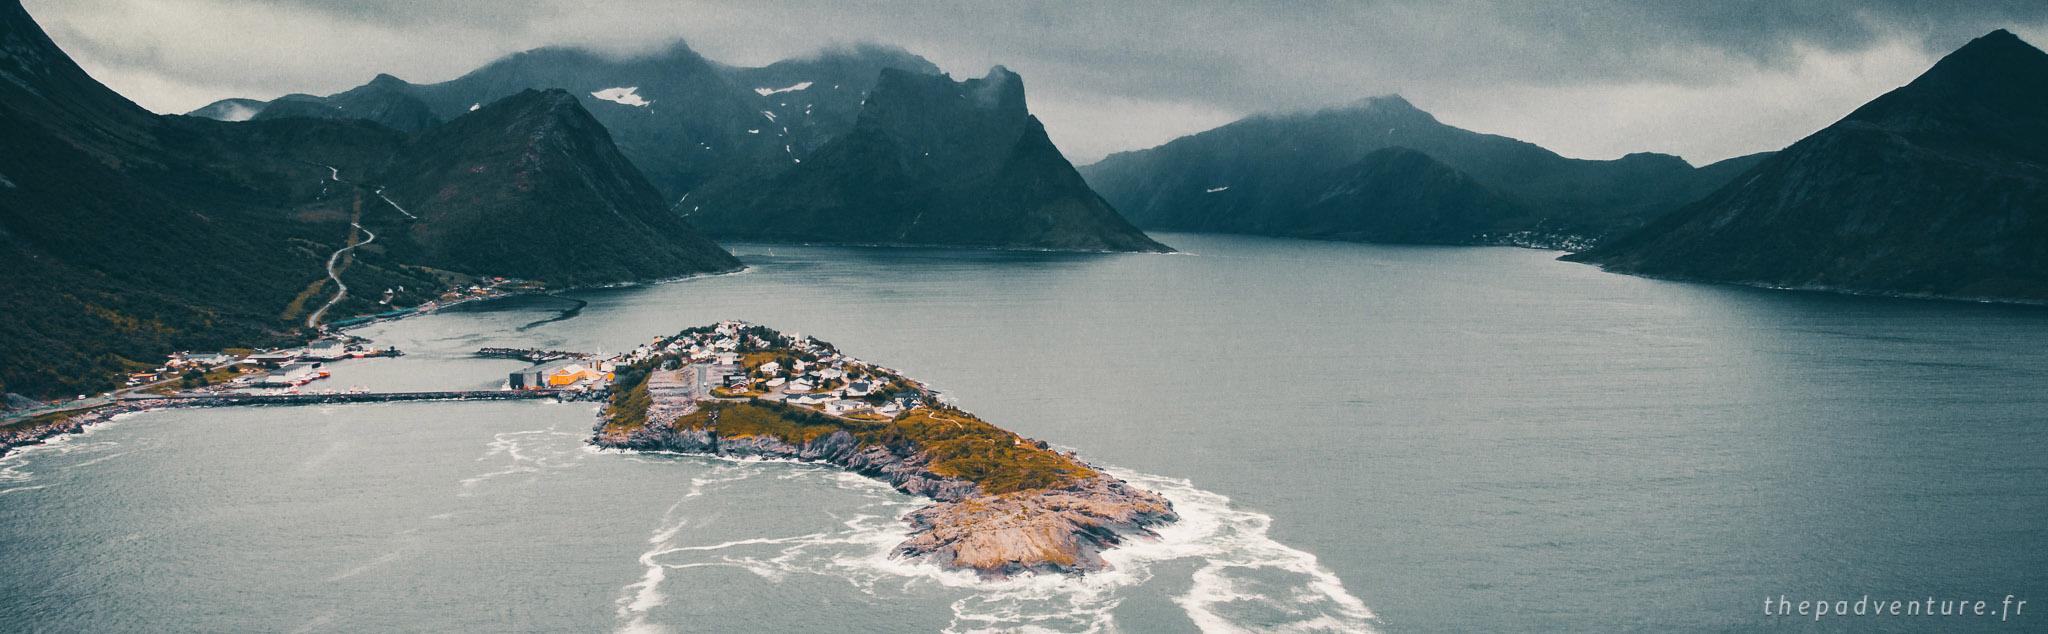 La presqu'île d'Husoy dans le nord de la norvege